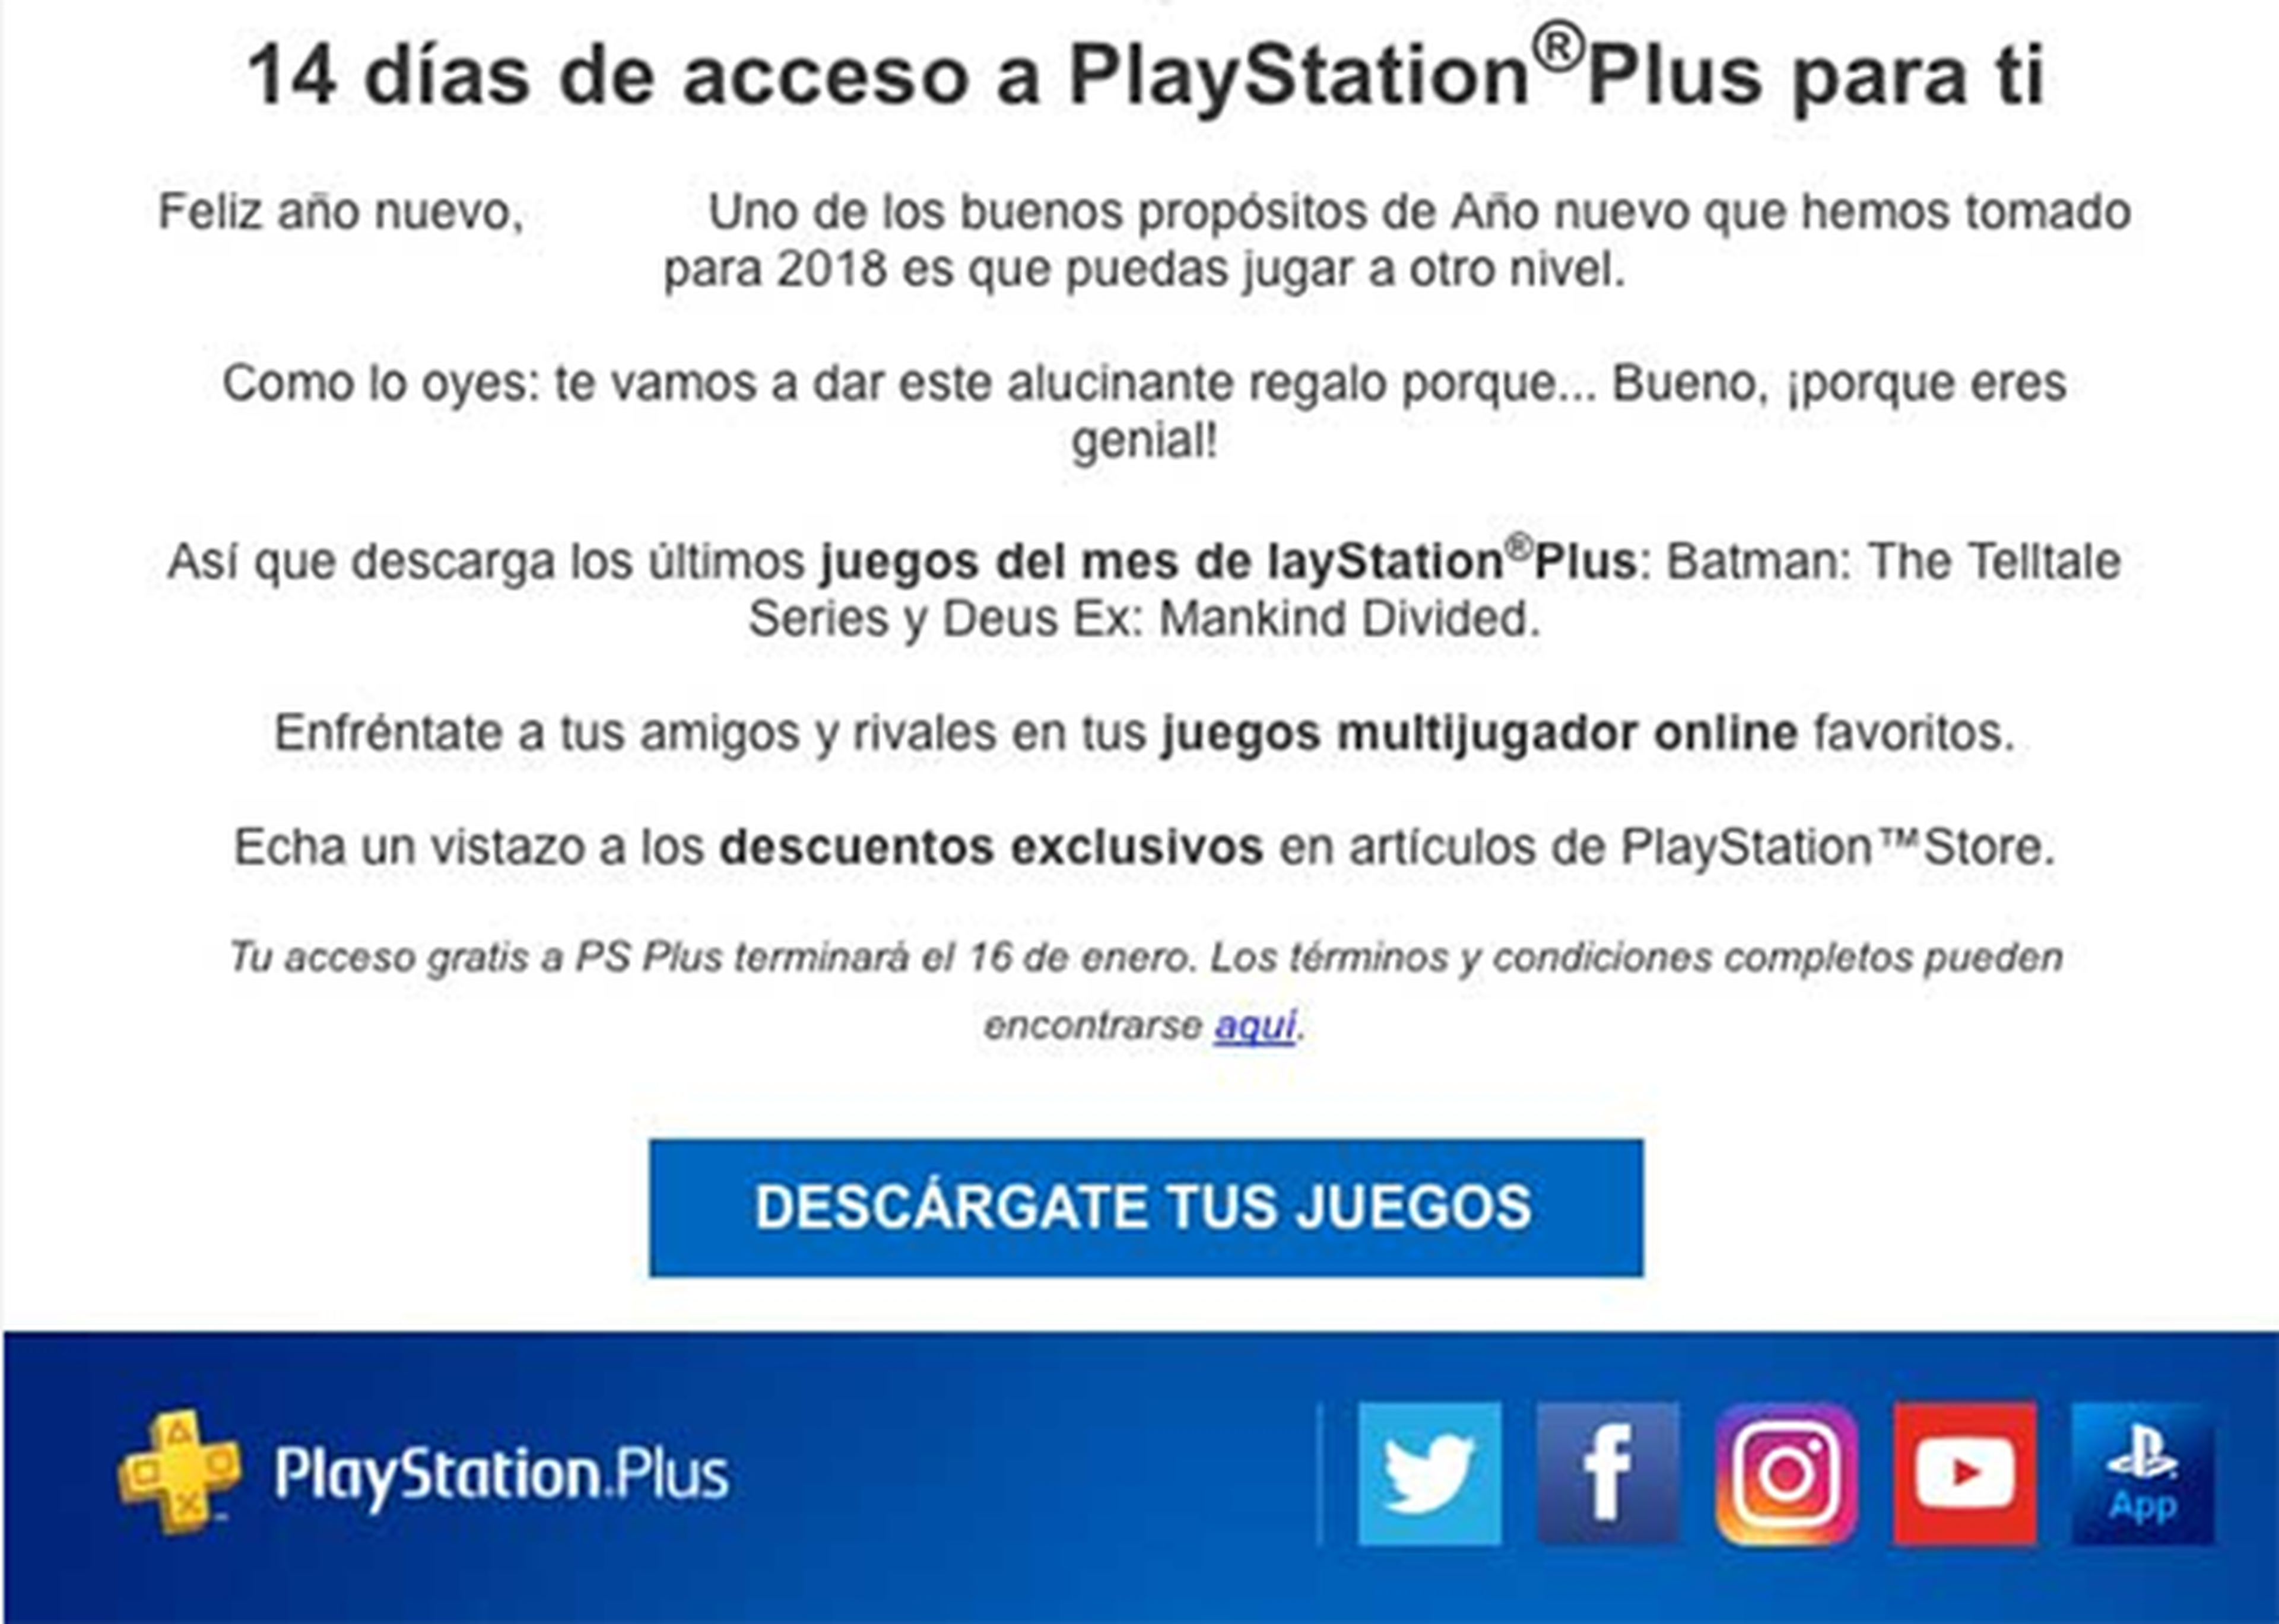 PlayStation Plus gratis durante 14 días: cómo darte de alta sin pagar